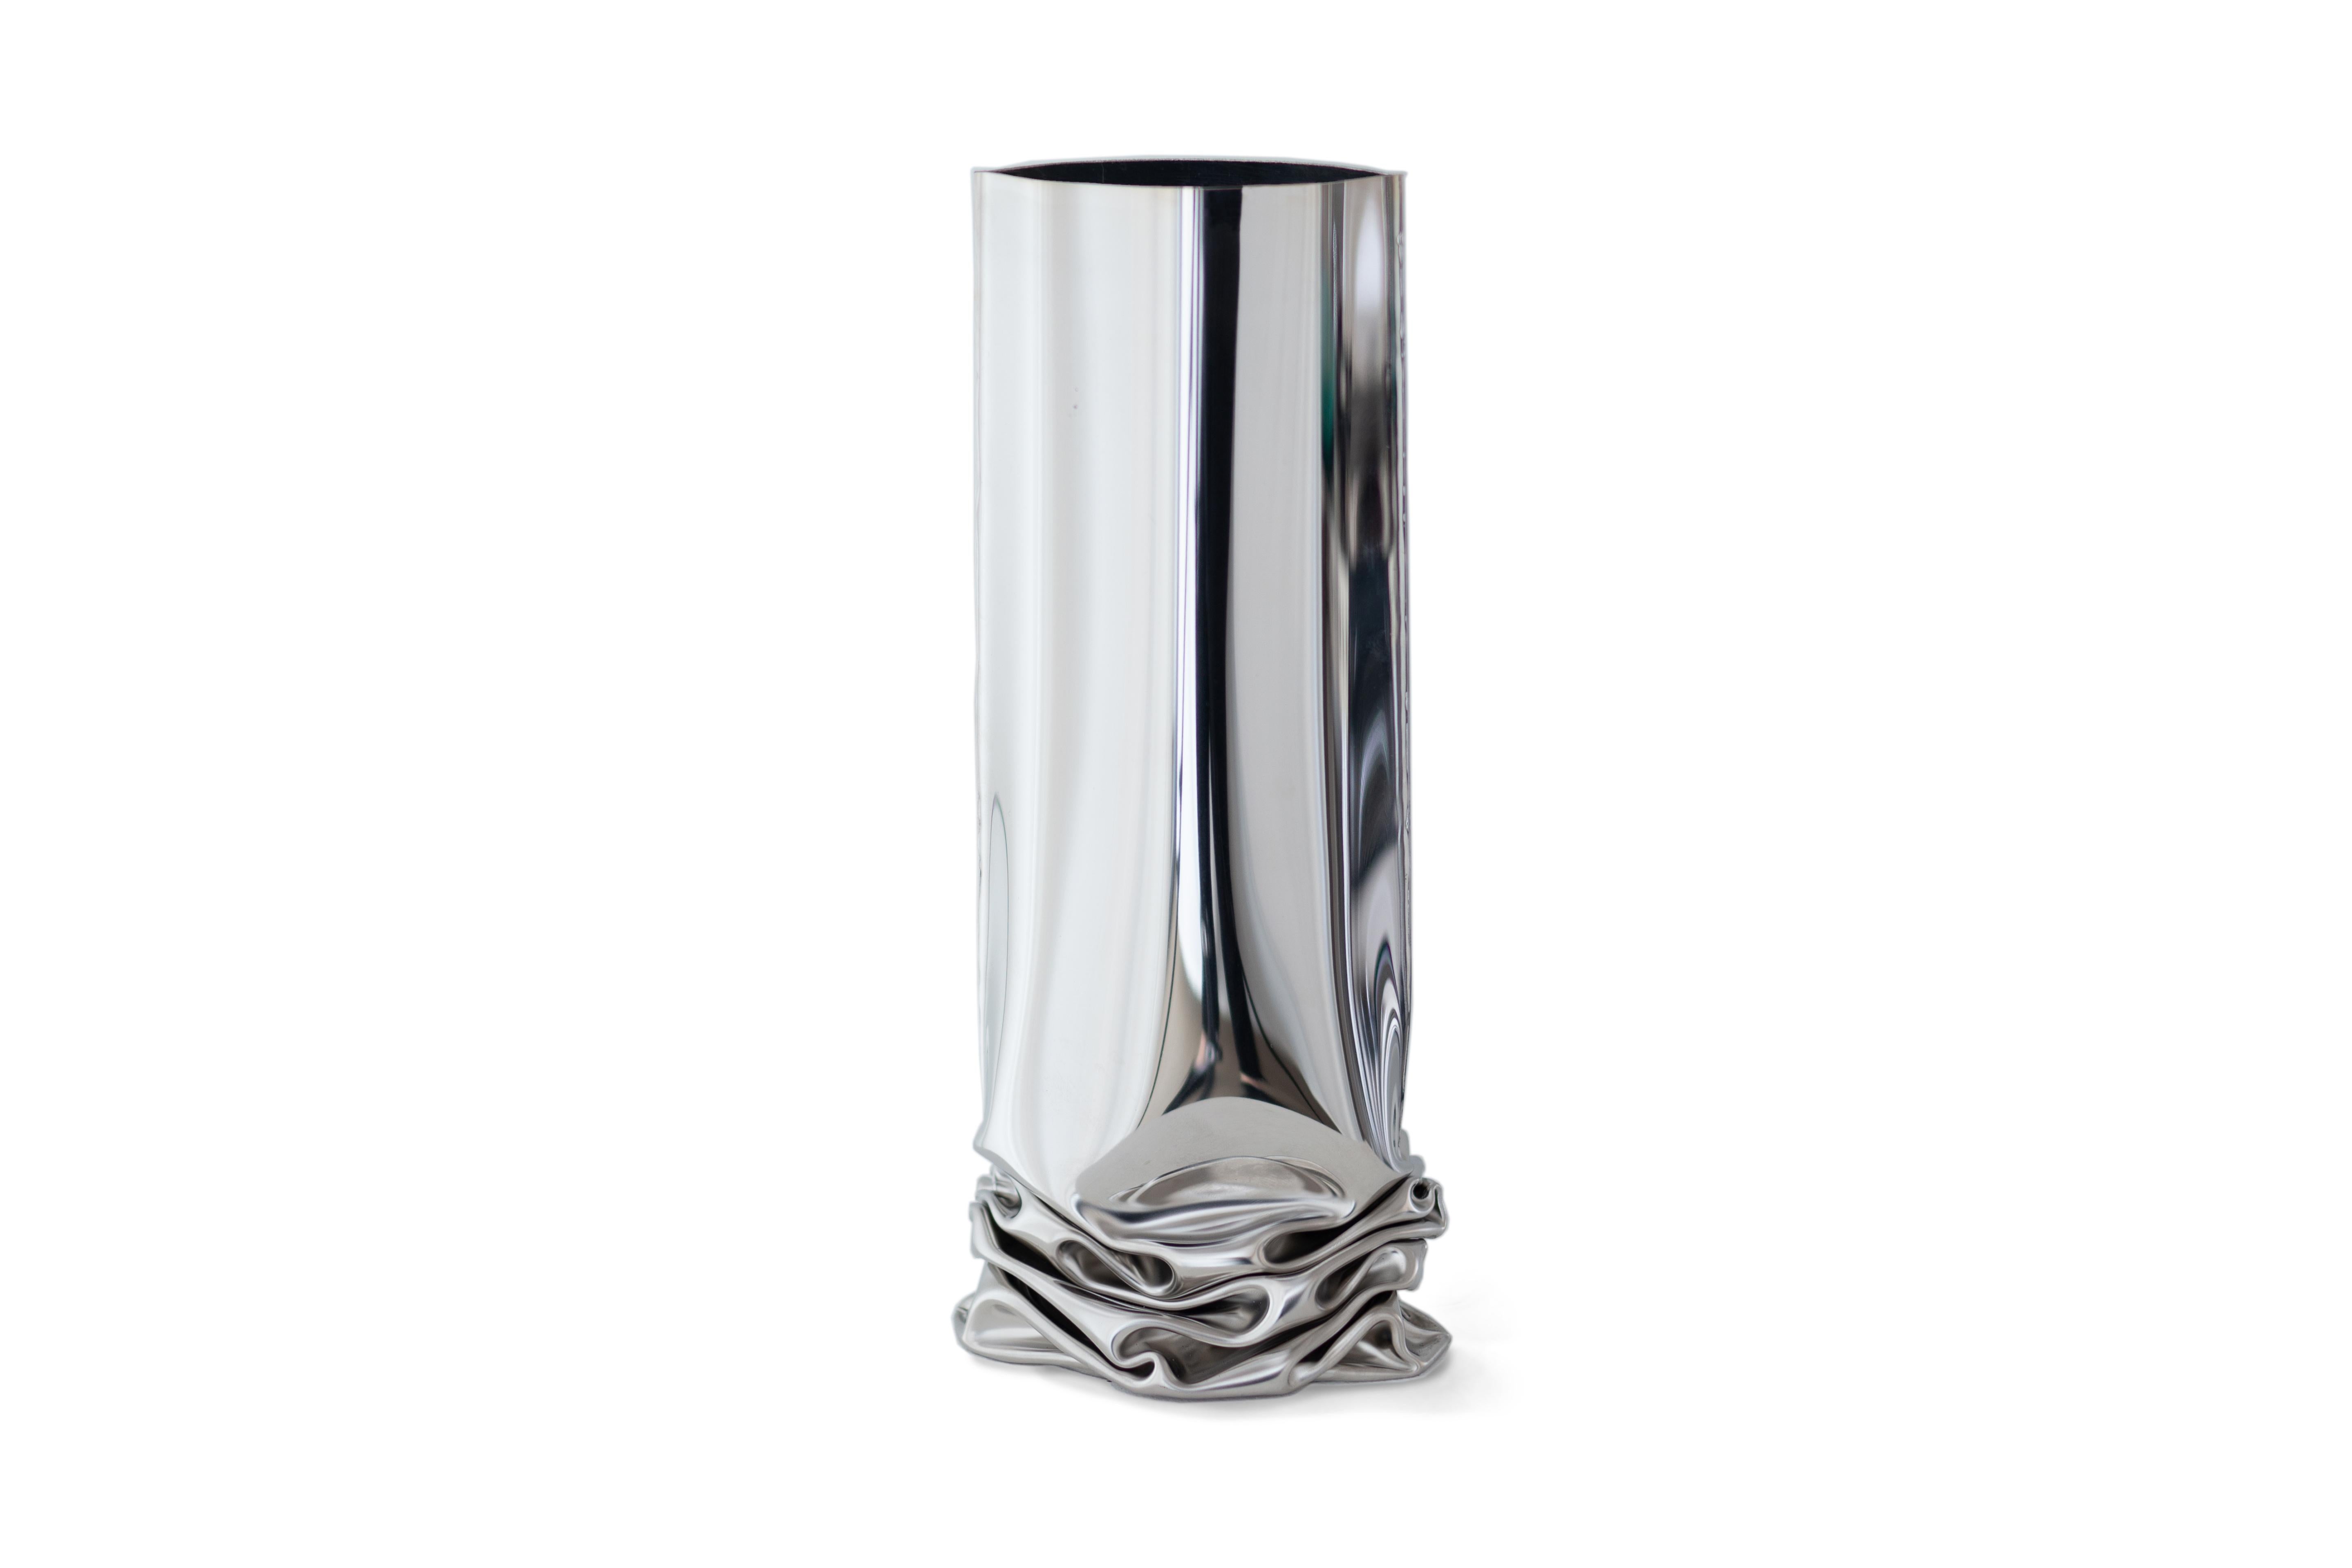 Vase Crash 1 par Zieta
Dimensions : H 30 x L 13,5 x P 20 cm.
MATERIAL : acier inoxydable poli.

Les vases Crash à déformation discrète reflètent la technique de la 